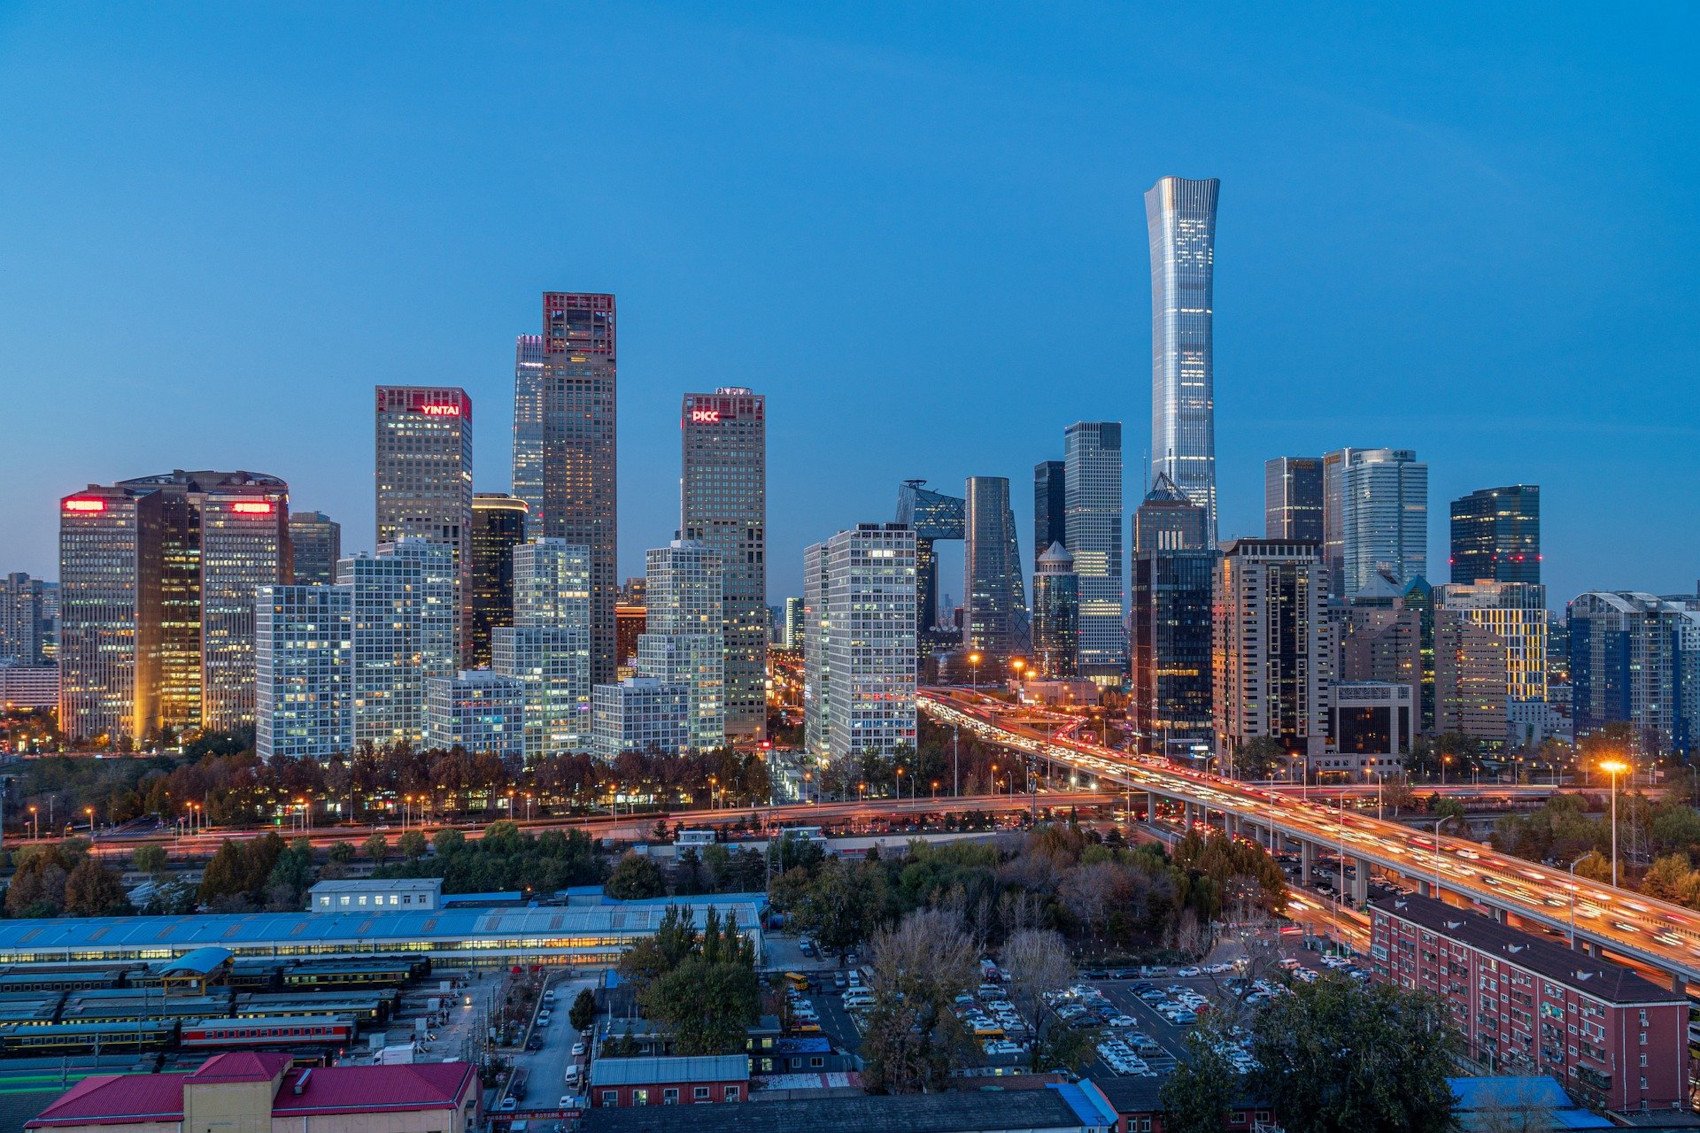 City Skyline - Image by Jeremy Zhu